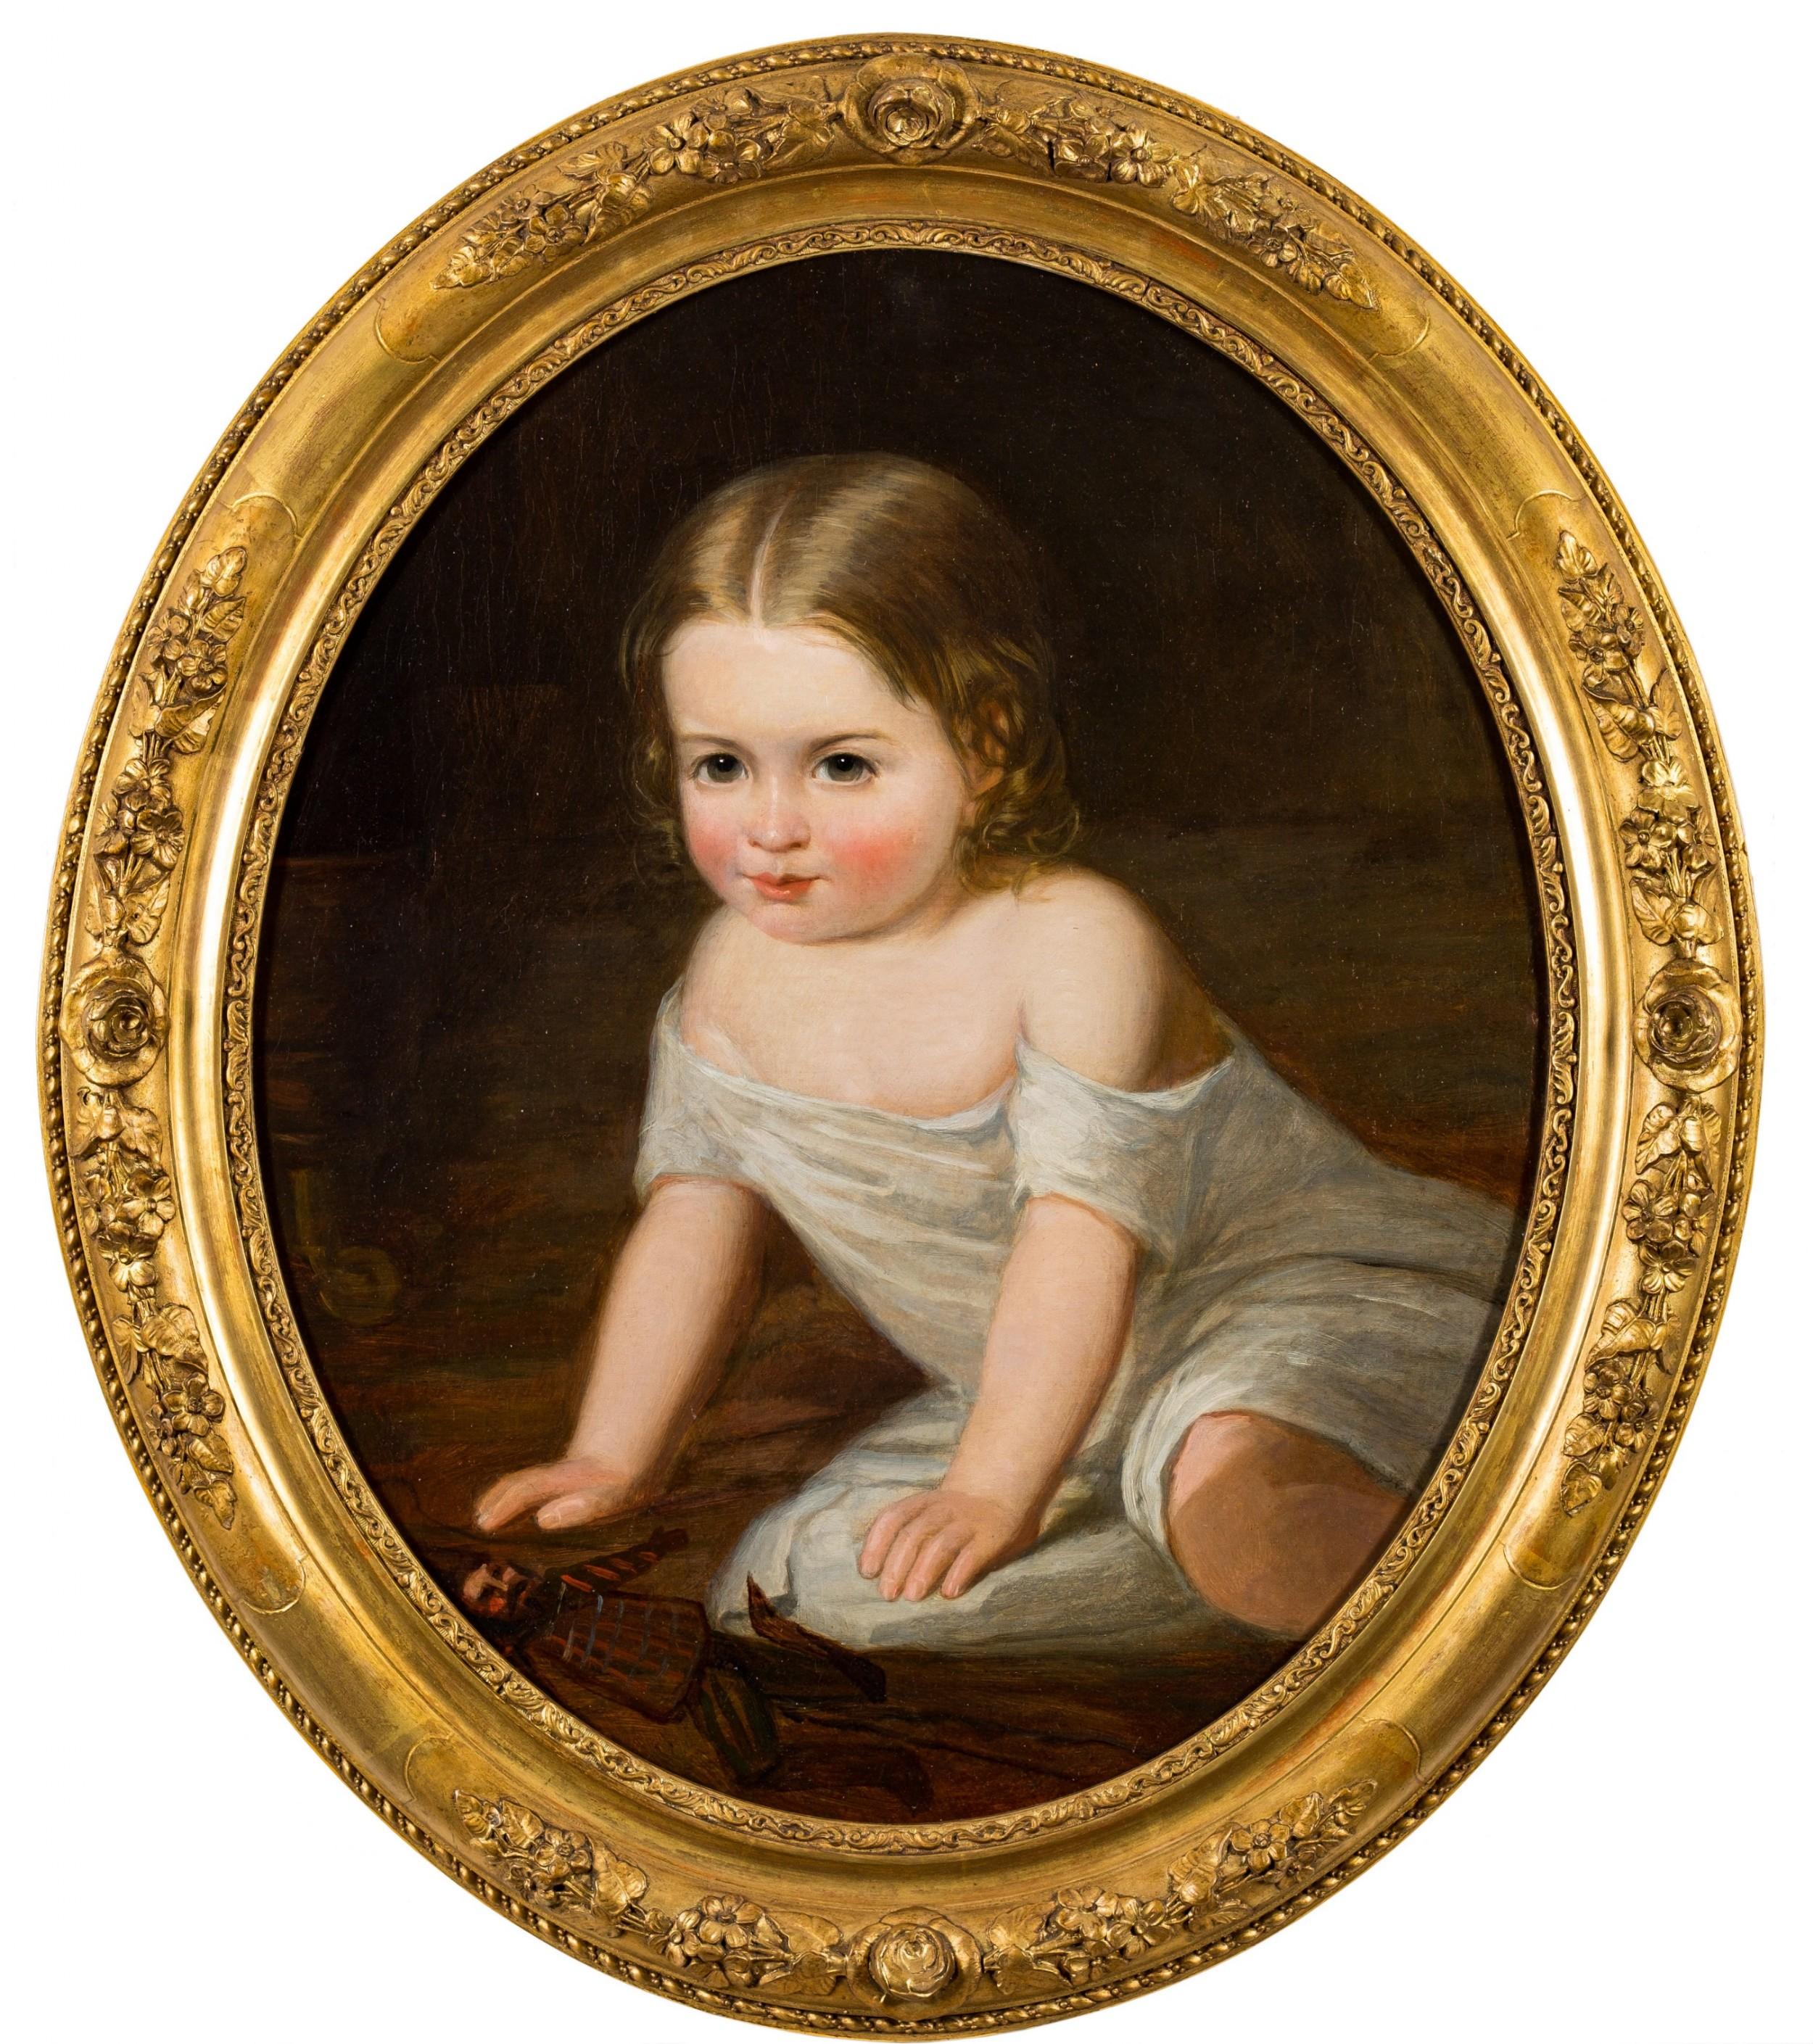 Portrait d'enfant en train de jouer, XIXe siècle, attribué à Henry Tanworth Wells